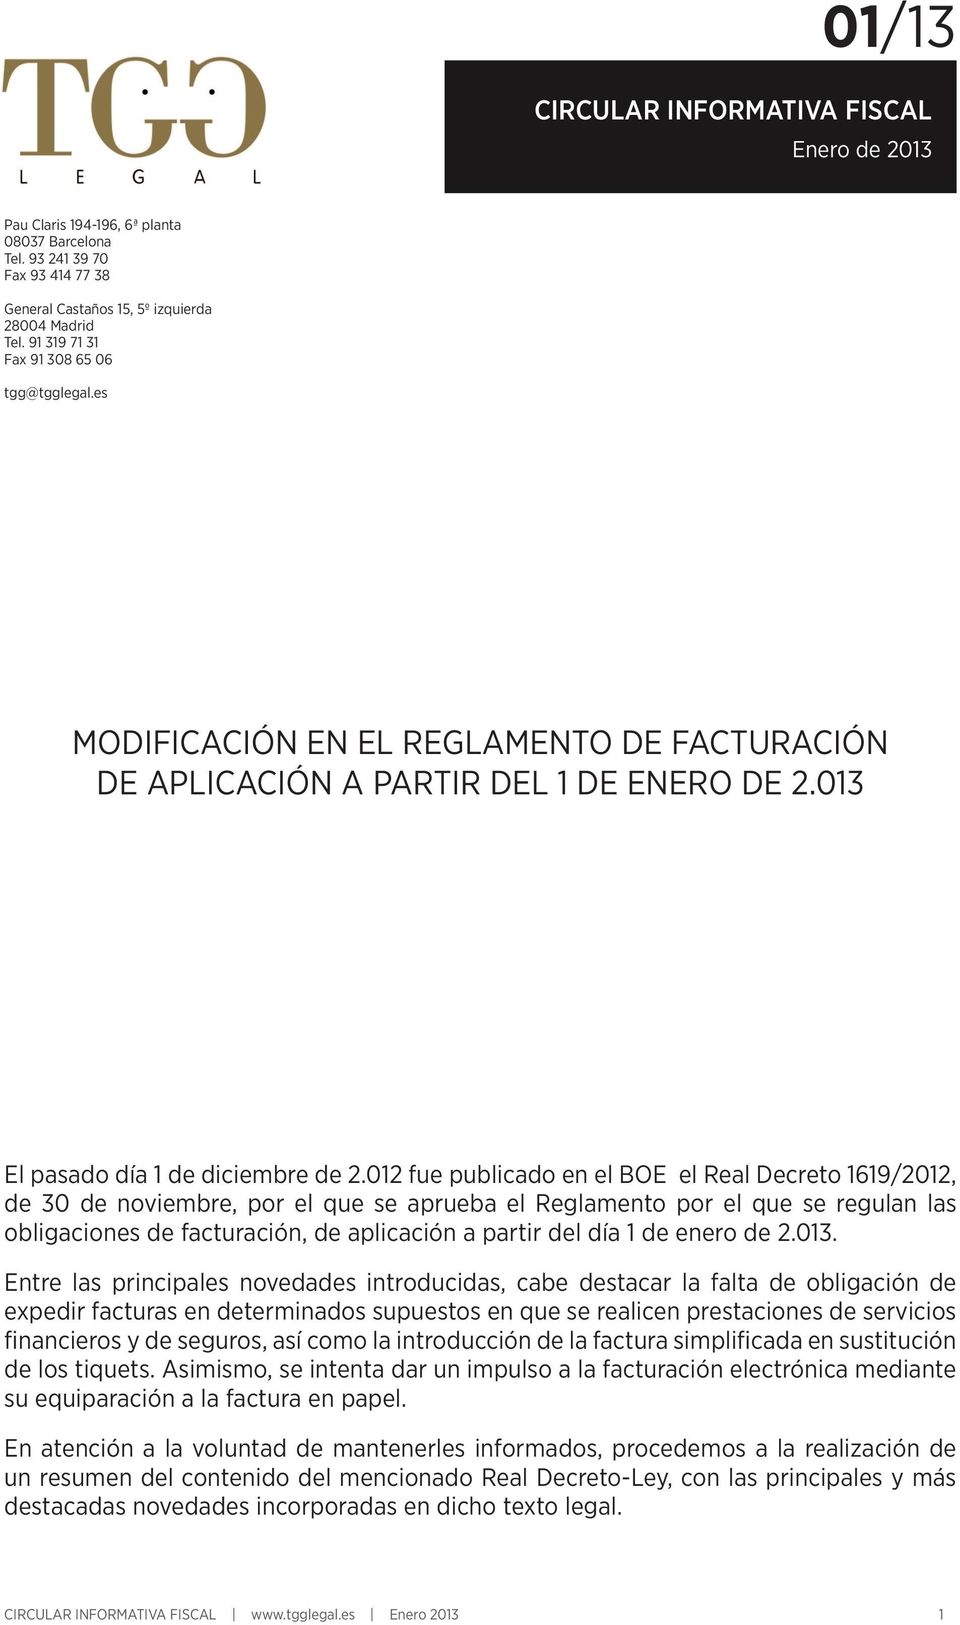 012 fue publicado en el BOE el Real Decreto 1619/2012, de 30 de noviembre, por el que se aprueba el Reglamento por el que se regulan las obligaciones de facturación, de aplicación a partir del día 1